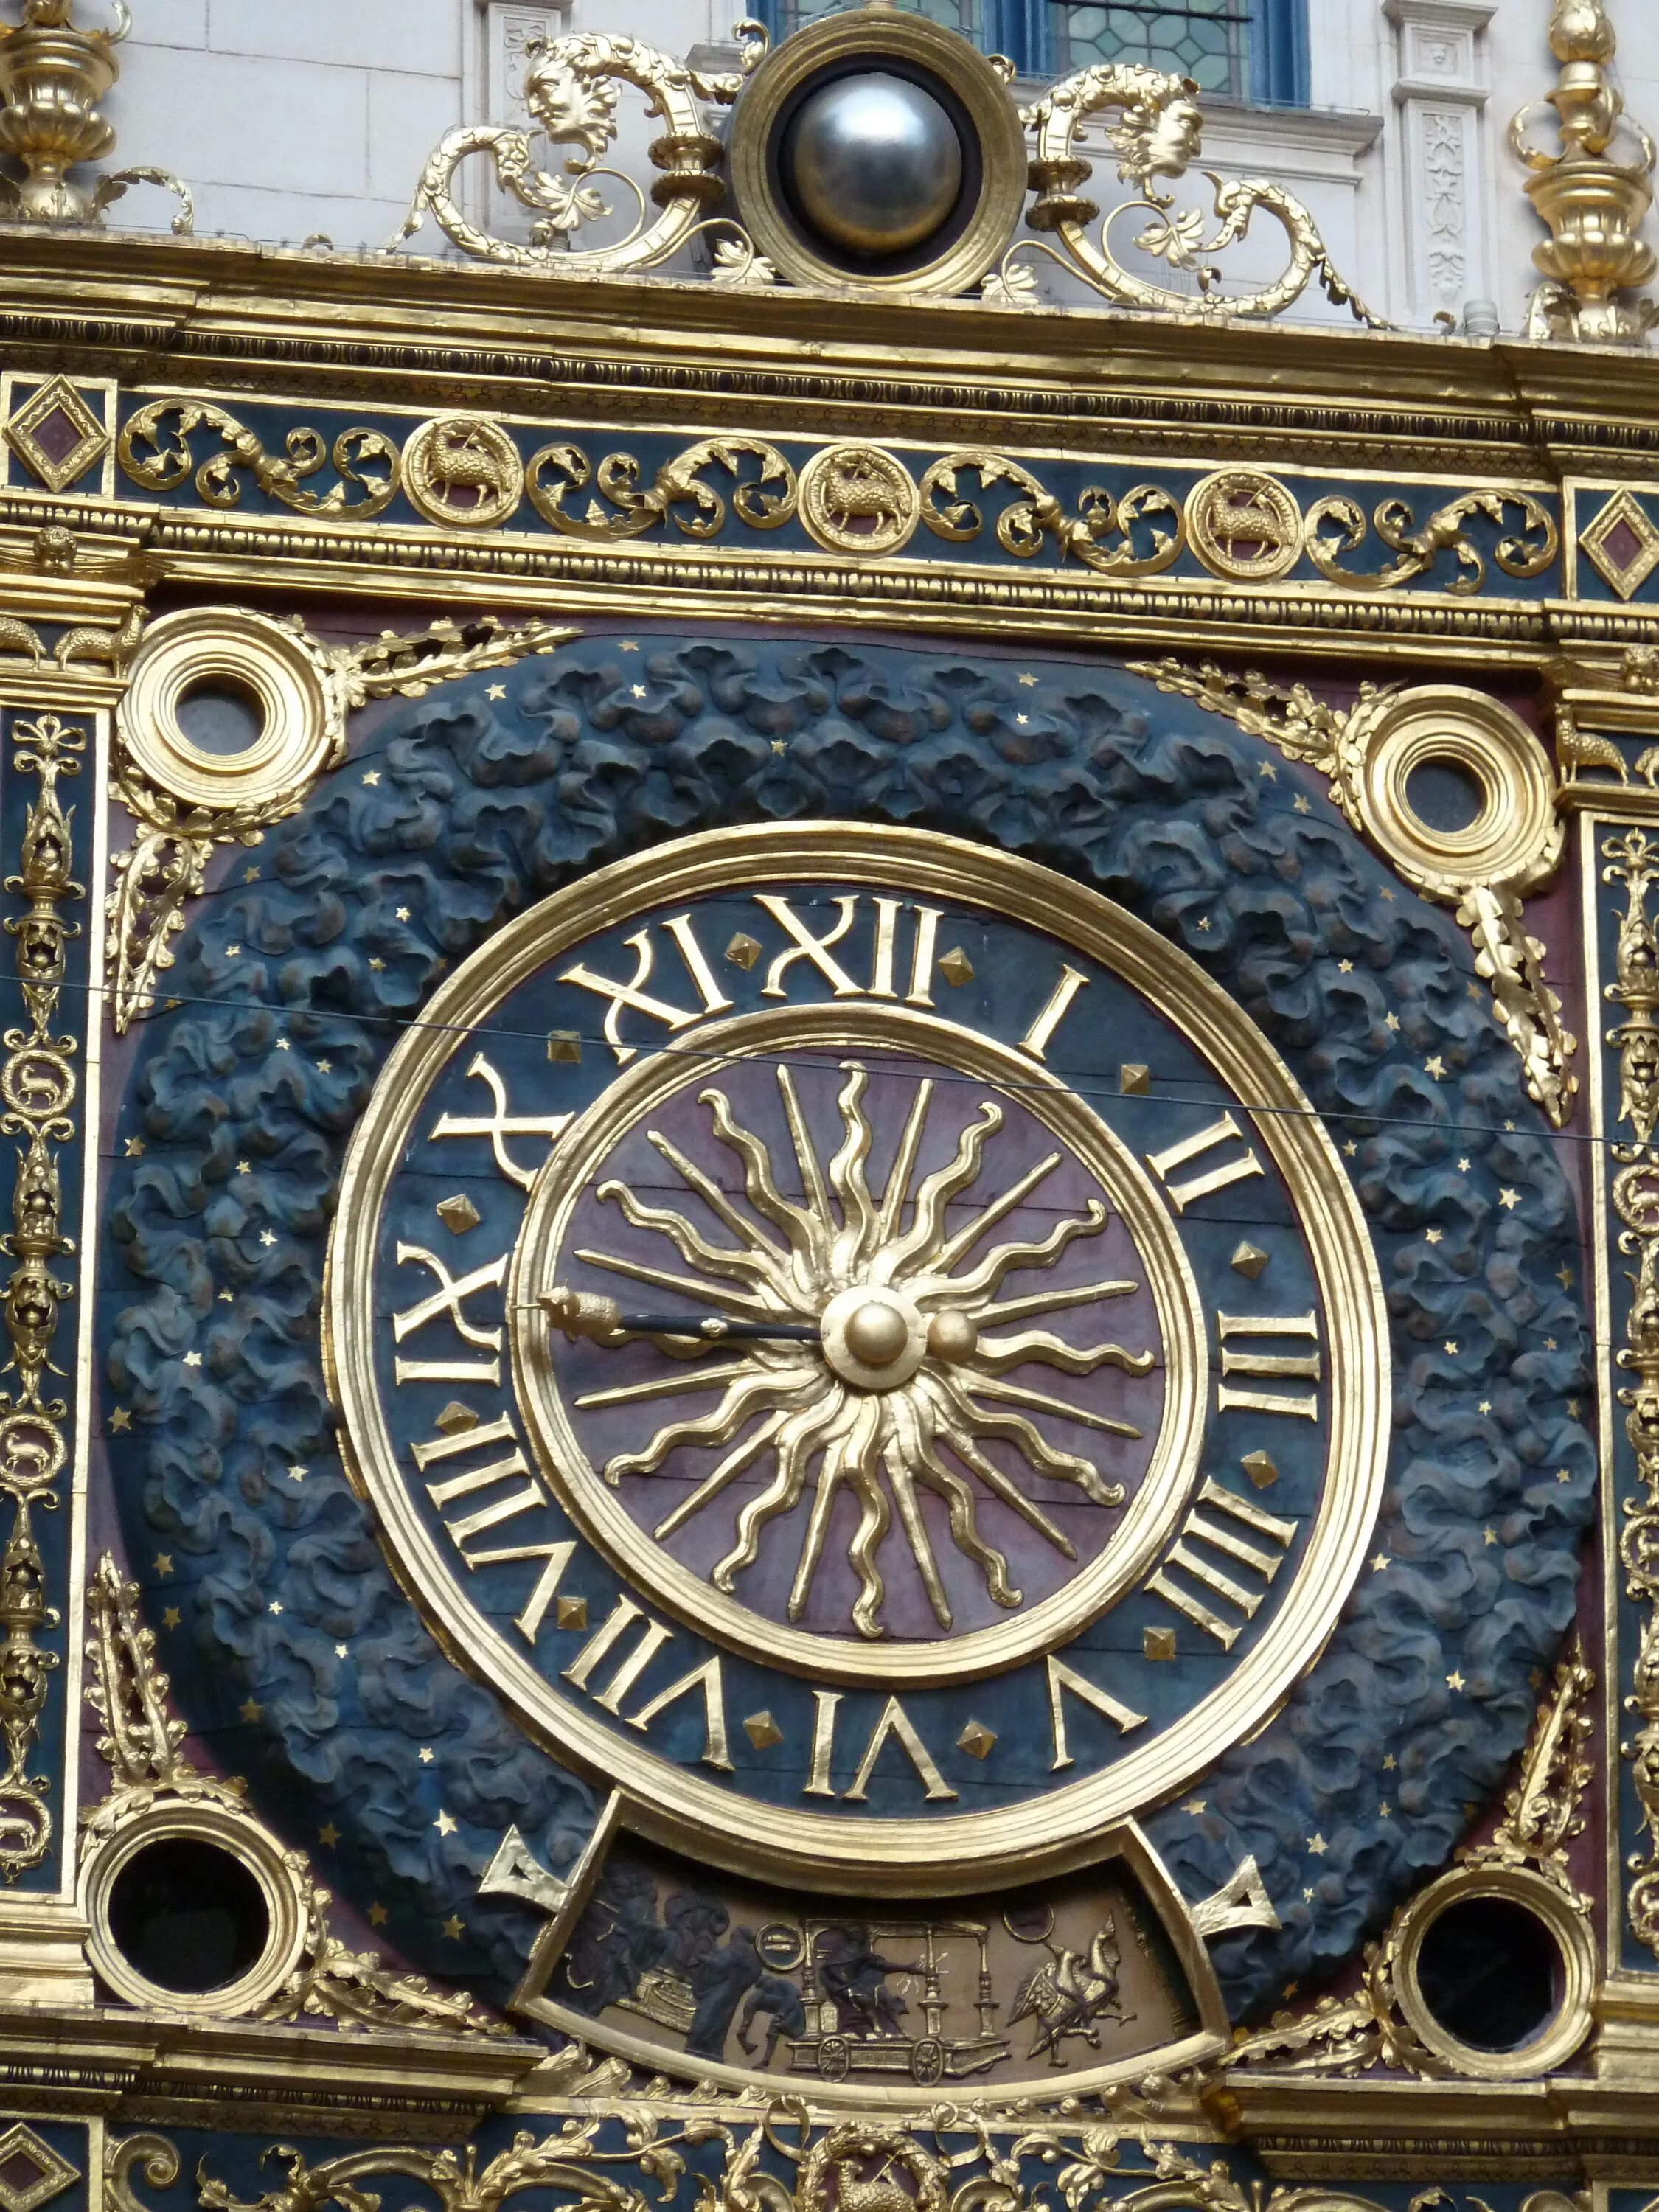 Rouen France часы. Астрономические часы Руана. Башенные часы во Франции. Башня с часами Франция. French hours